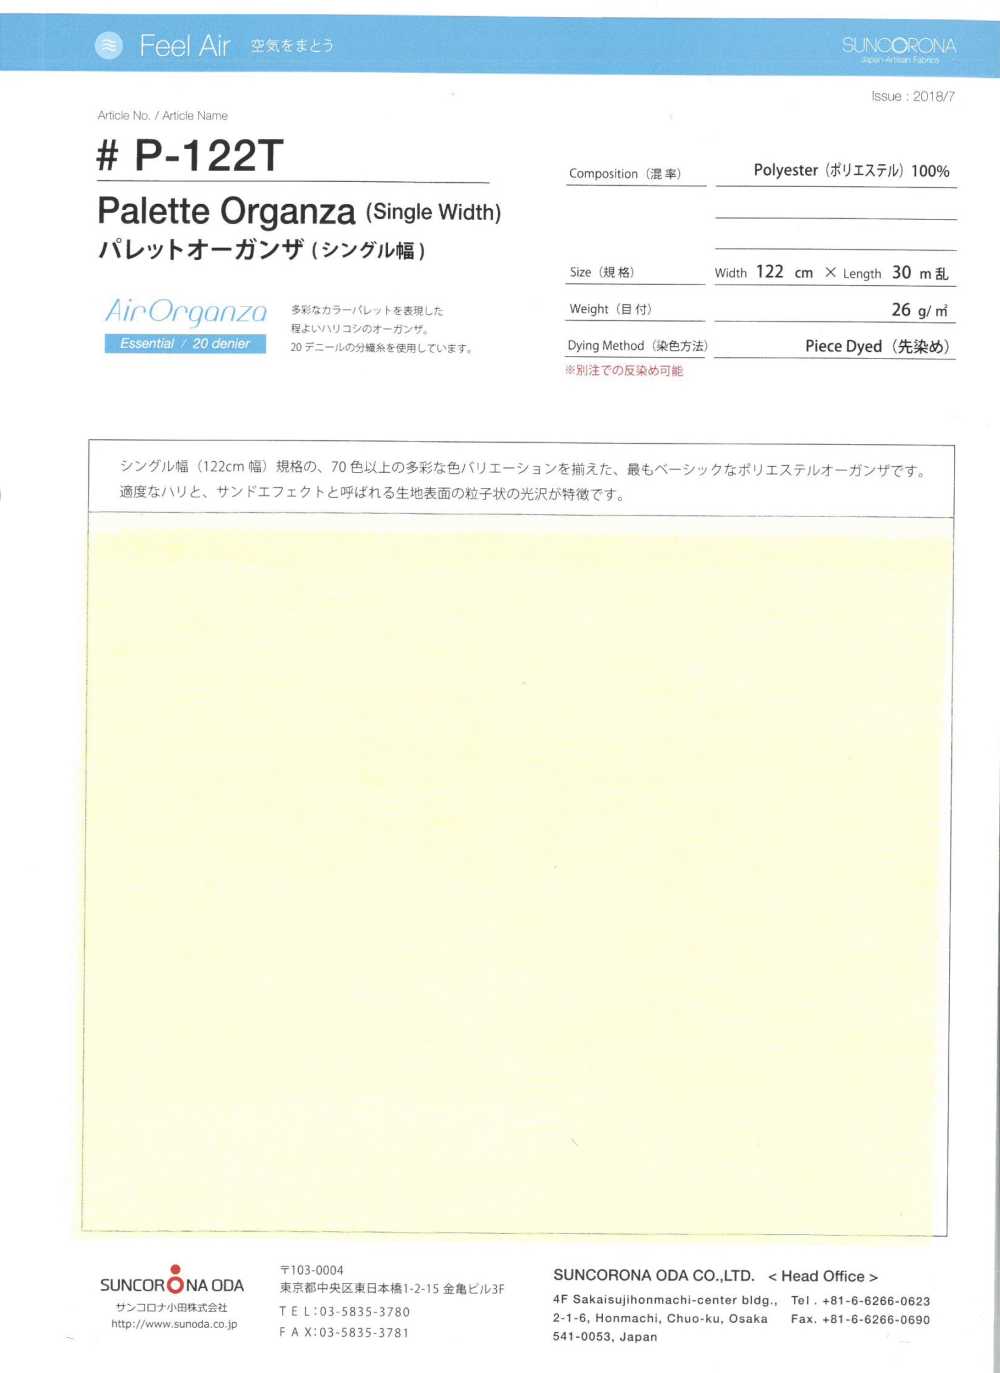 P-122T Pallet Organza (Chiều Rộng đơn)[Vải] Suncorona Oda